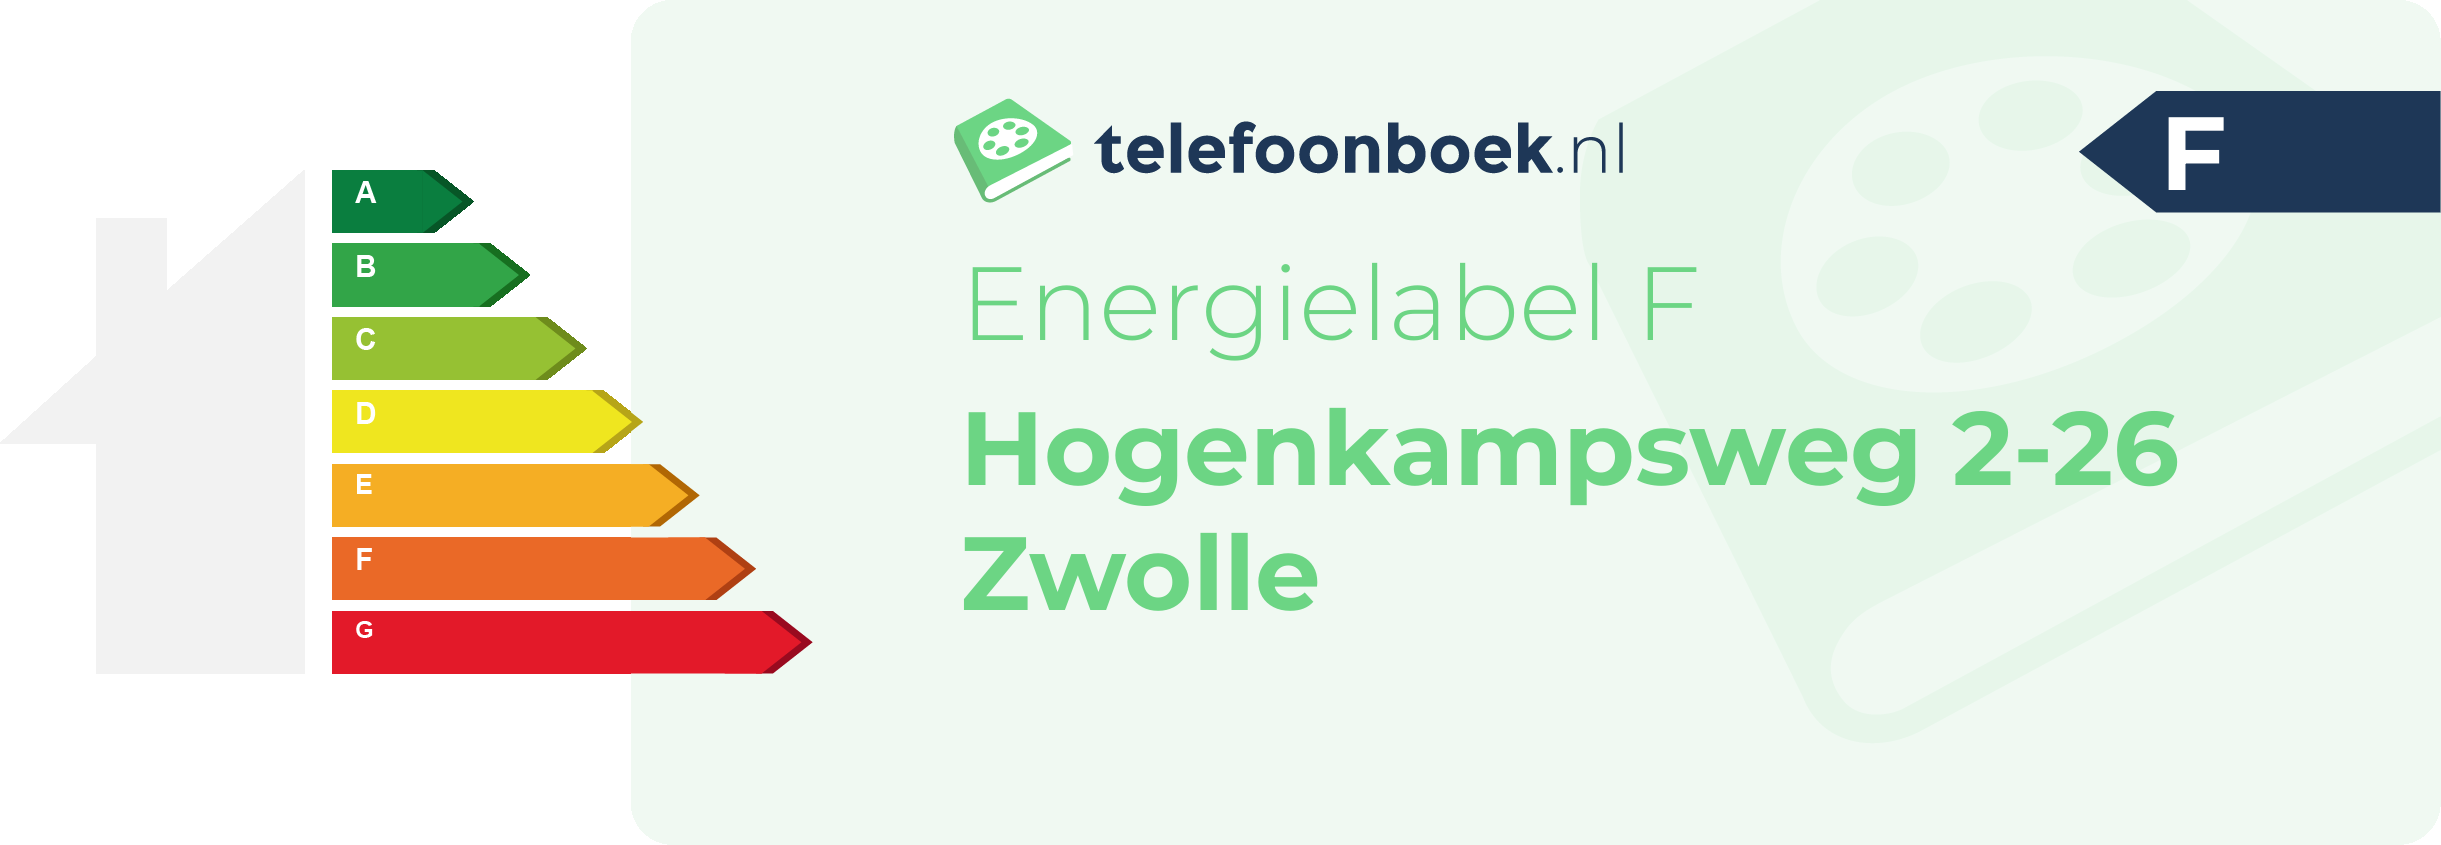 Energielabel Hogenkampsweg 2-26 Zwolle